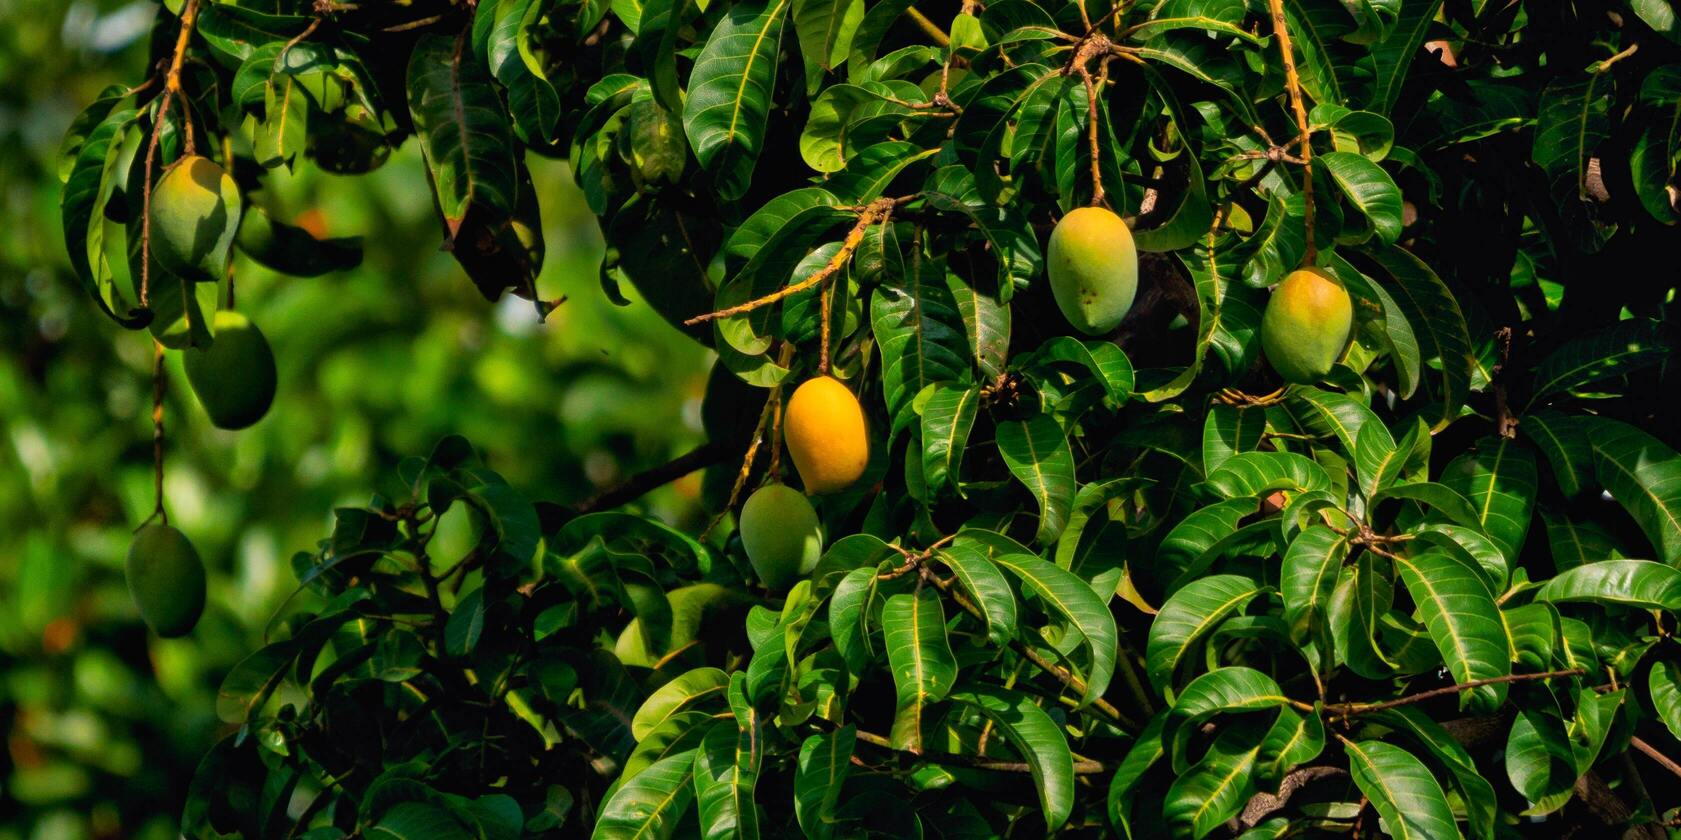 Mangobaum draussen mit reifen und unreifen Früchten daran